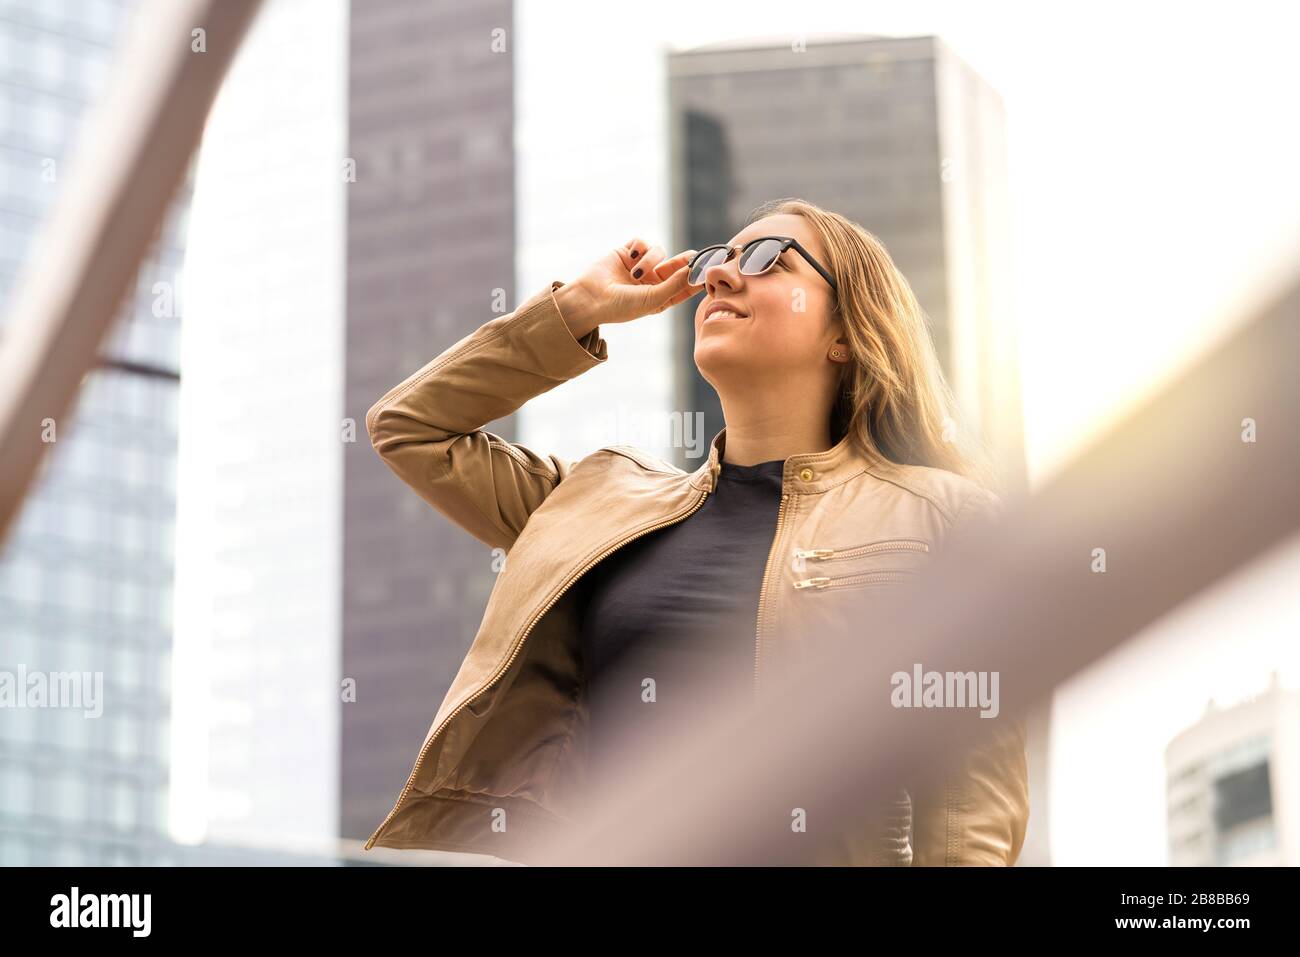 Giovane donna di successo in grande città con alti edifici e grattacieli. Donna elegante e sicura con occhiali da sole. Foto Stock